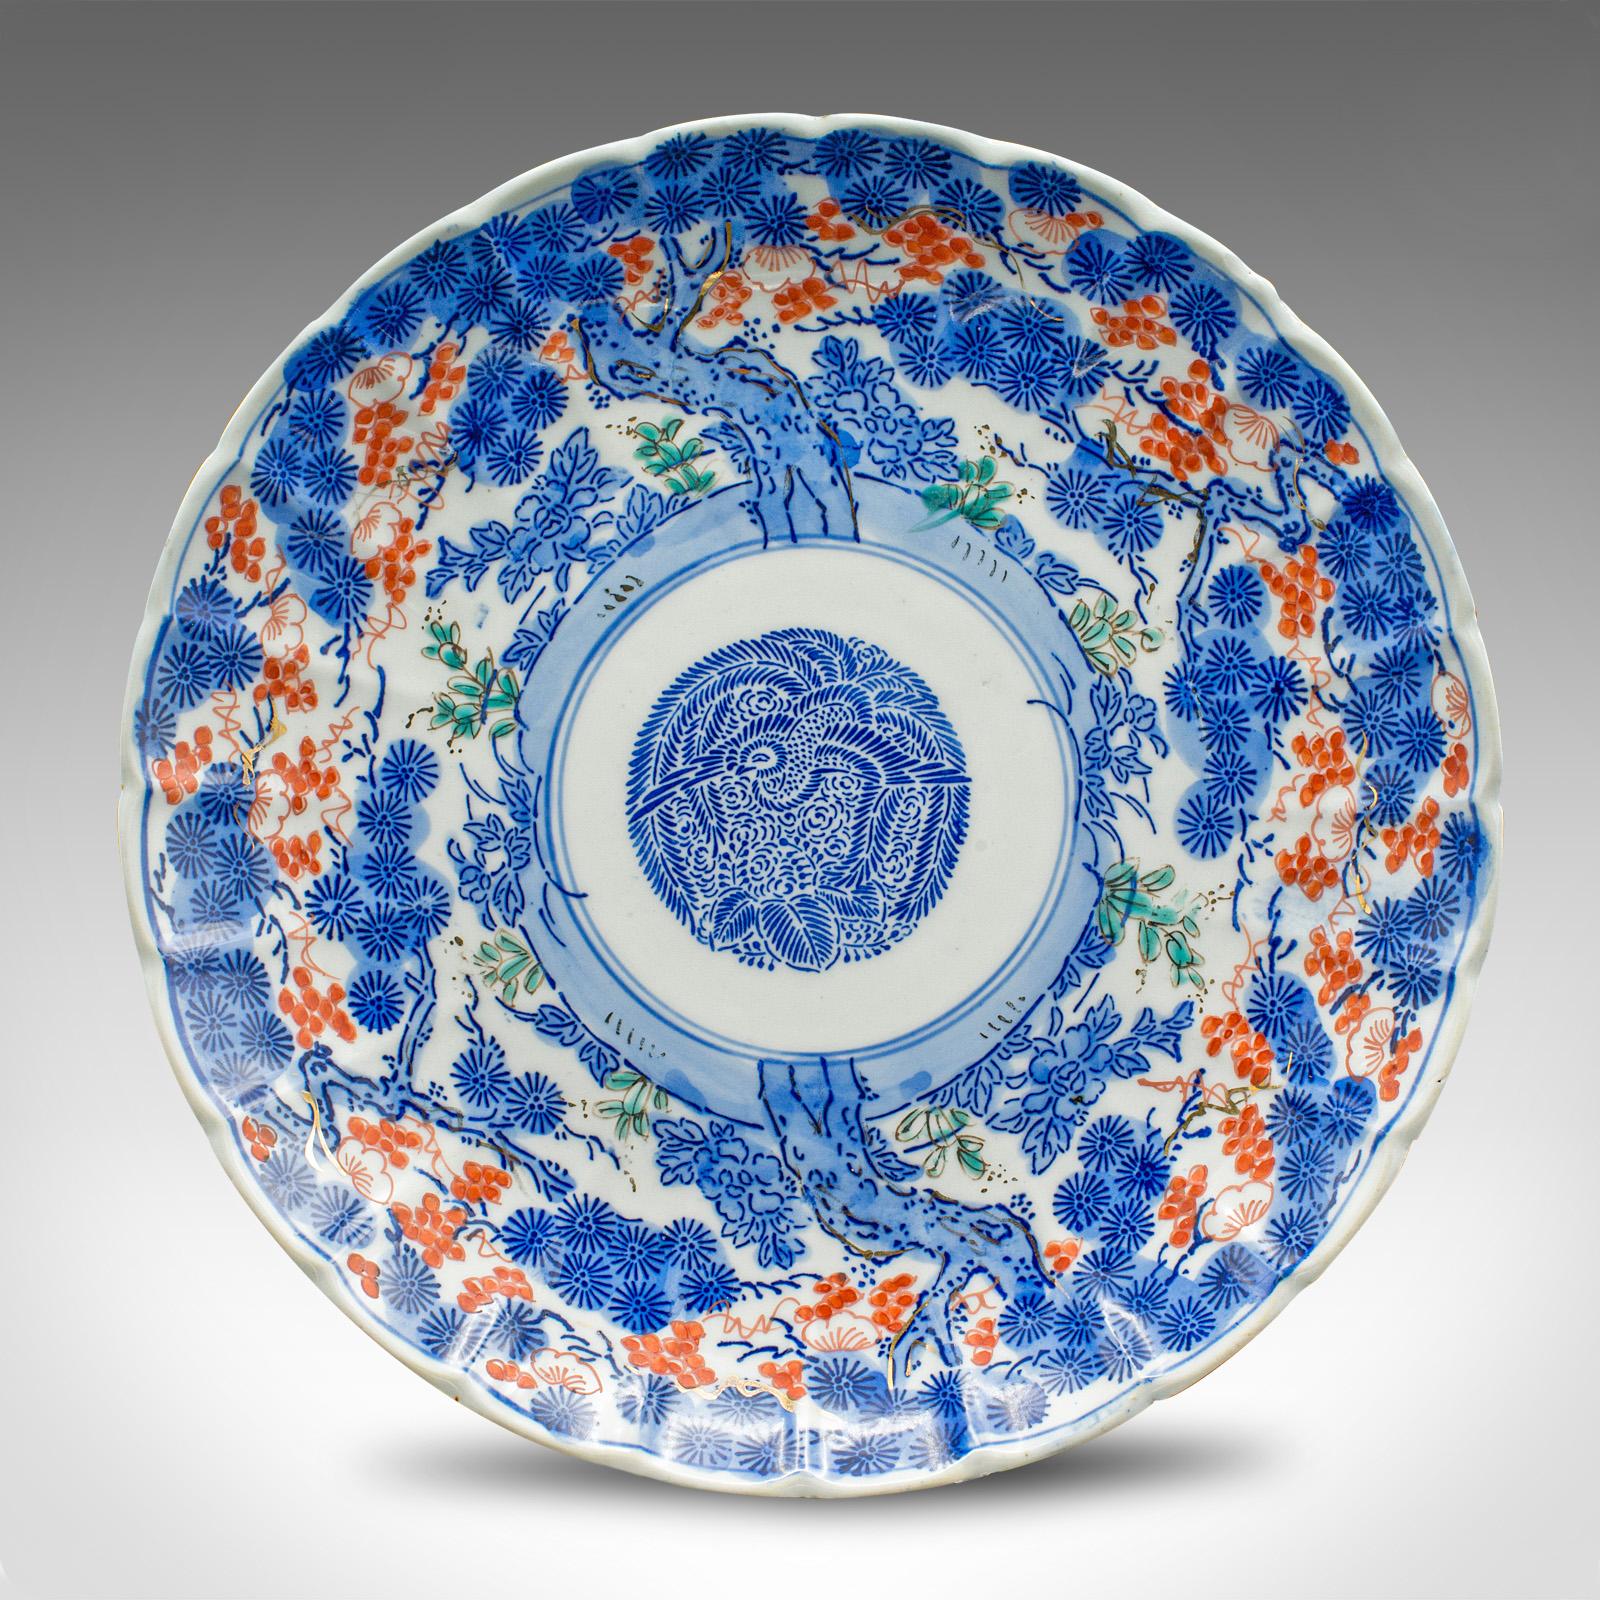 Il s'agit d'une plaque décorative ancienne. Un plat de service japonais en céramique au goût bleu Imari, datant de la fin de la période victorienne, vers 1900.

Assiette de service très décorative avec des motifs attrayants
Présente une patine